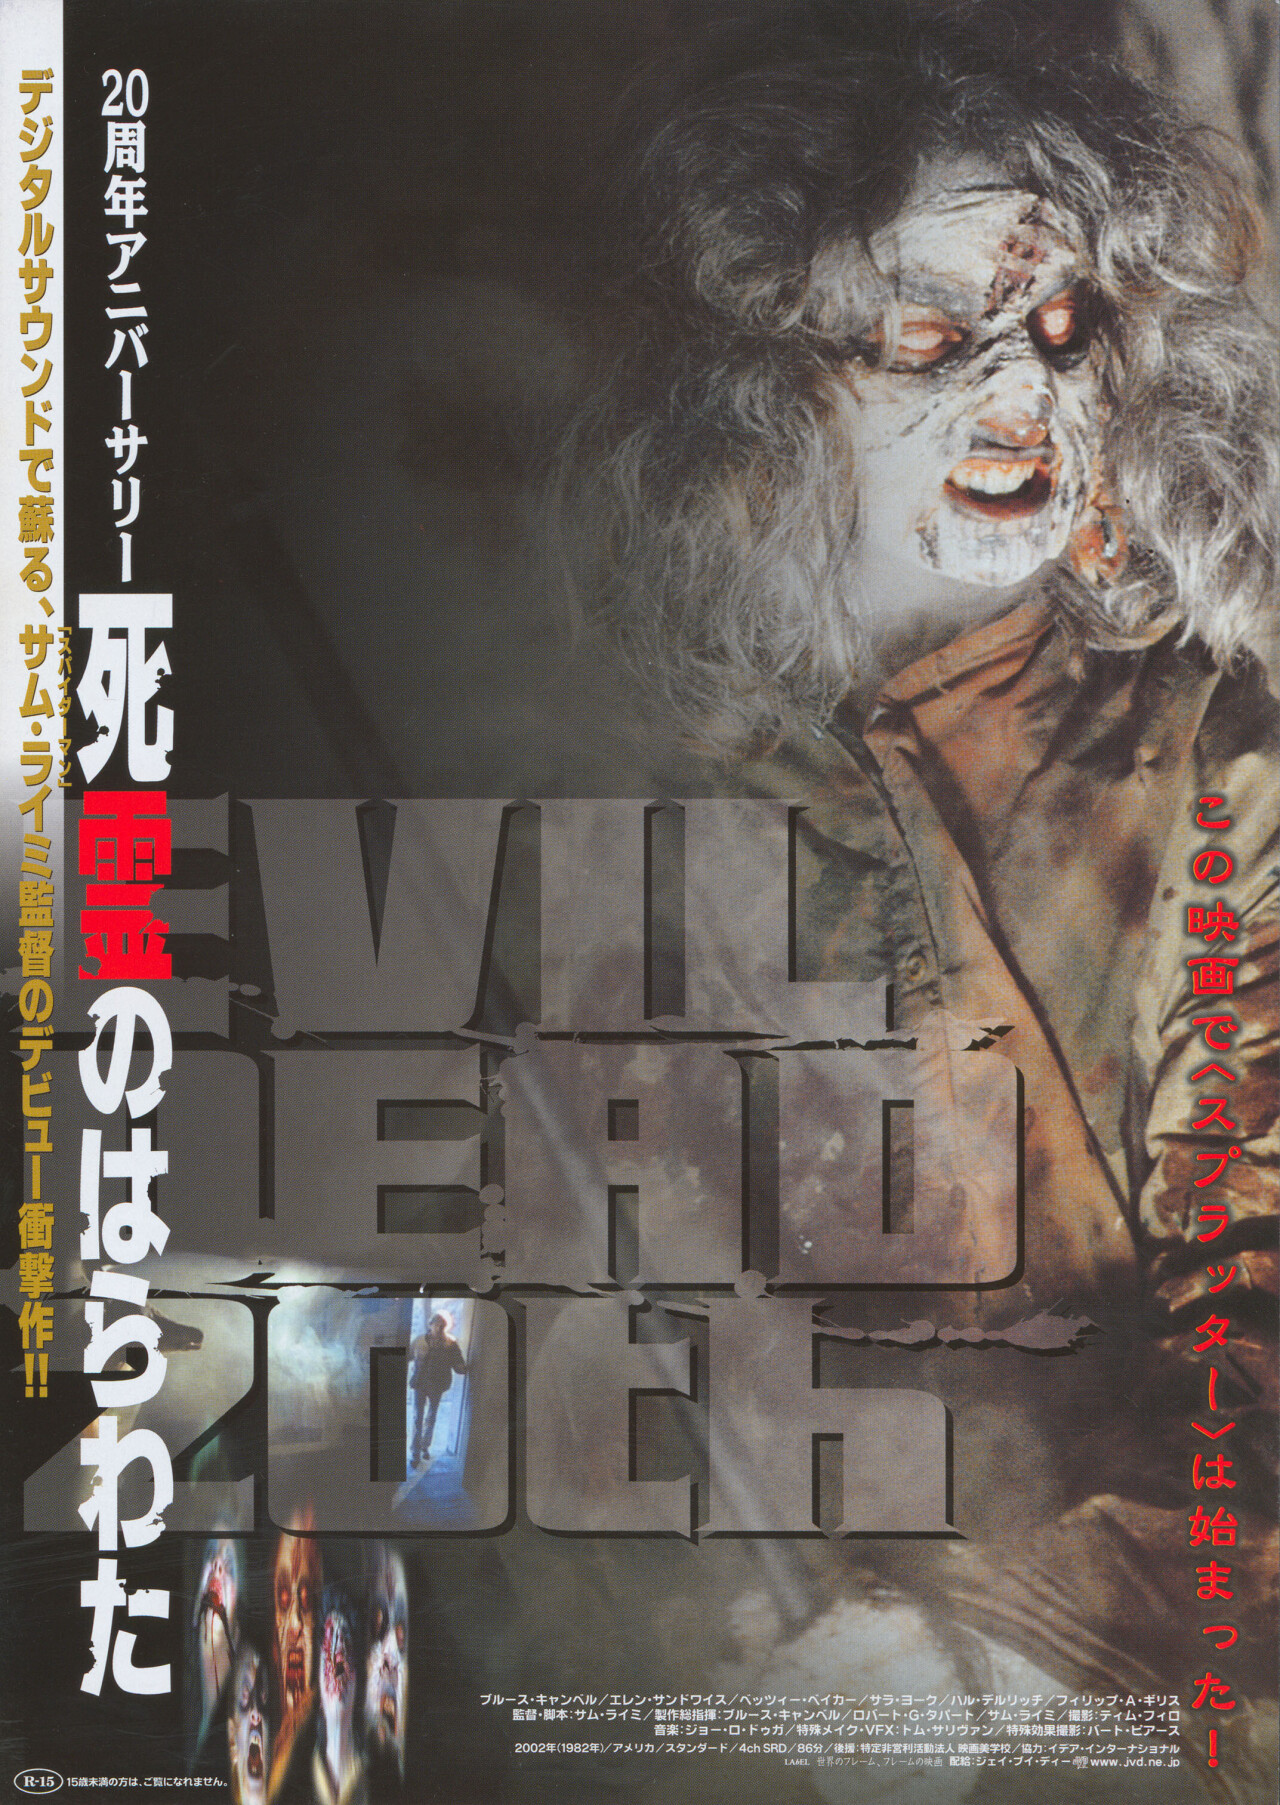 Зловещие мертвецы (The Evil Dead, 1981), режиссёр Сэм Рэйми, японский постер к фильму (ужасы, 2002 год)